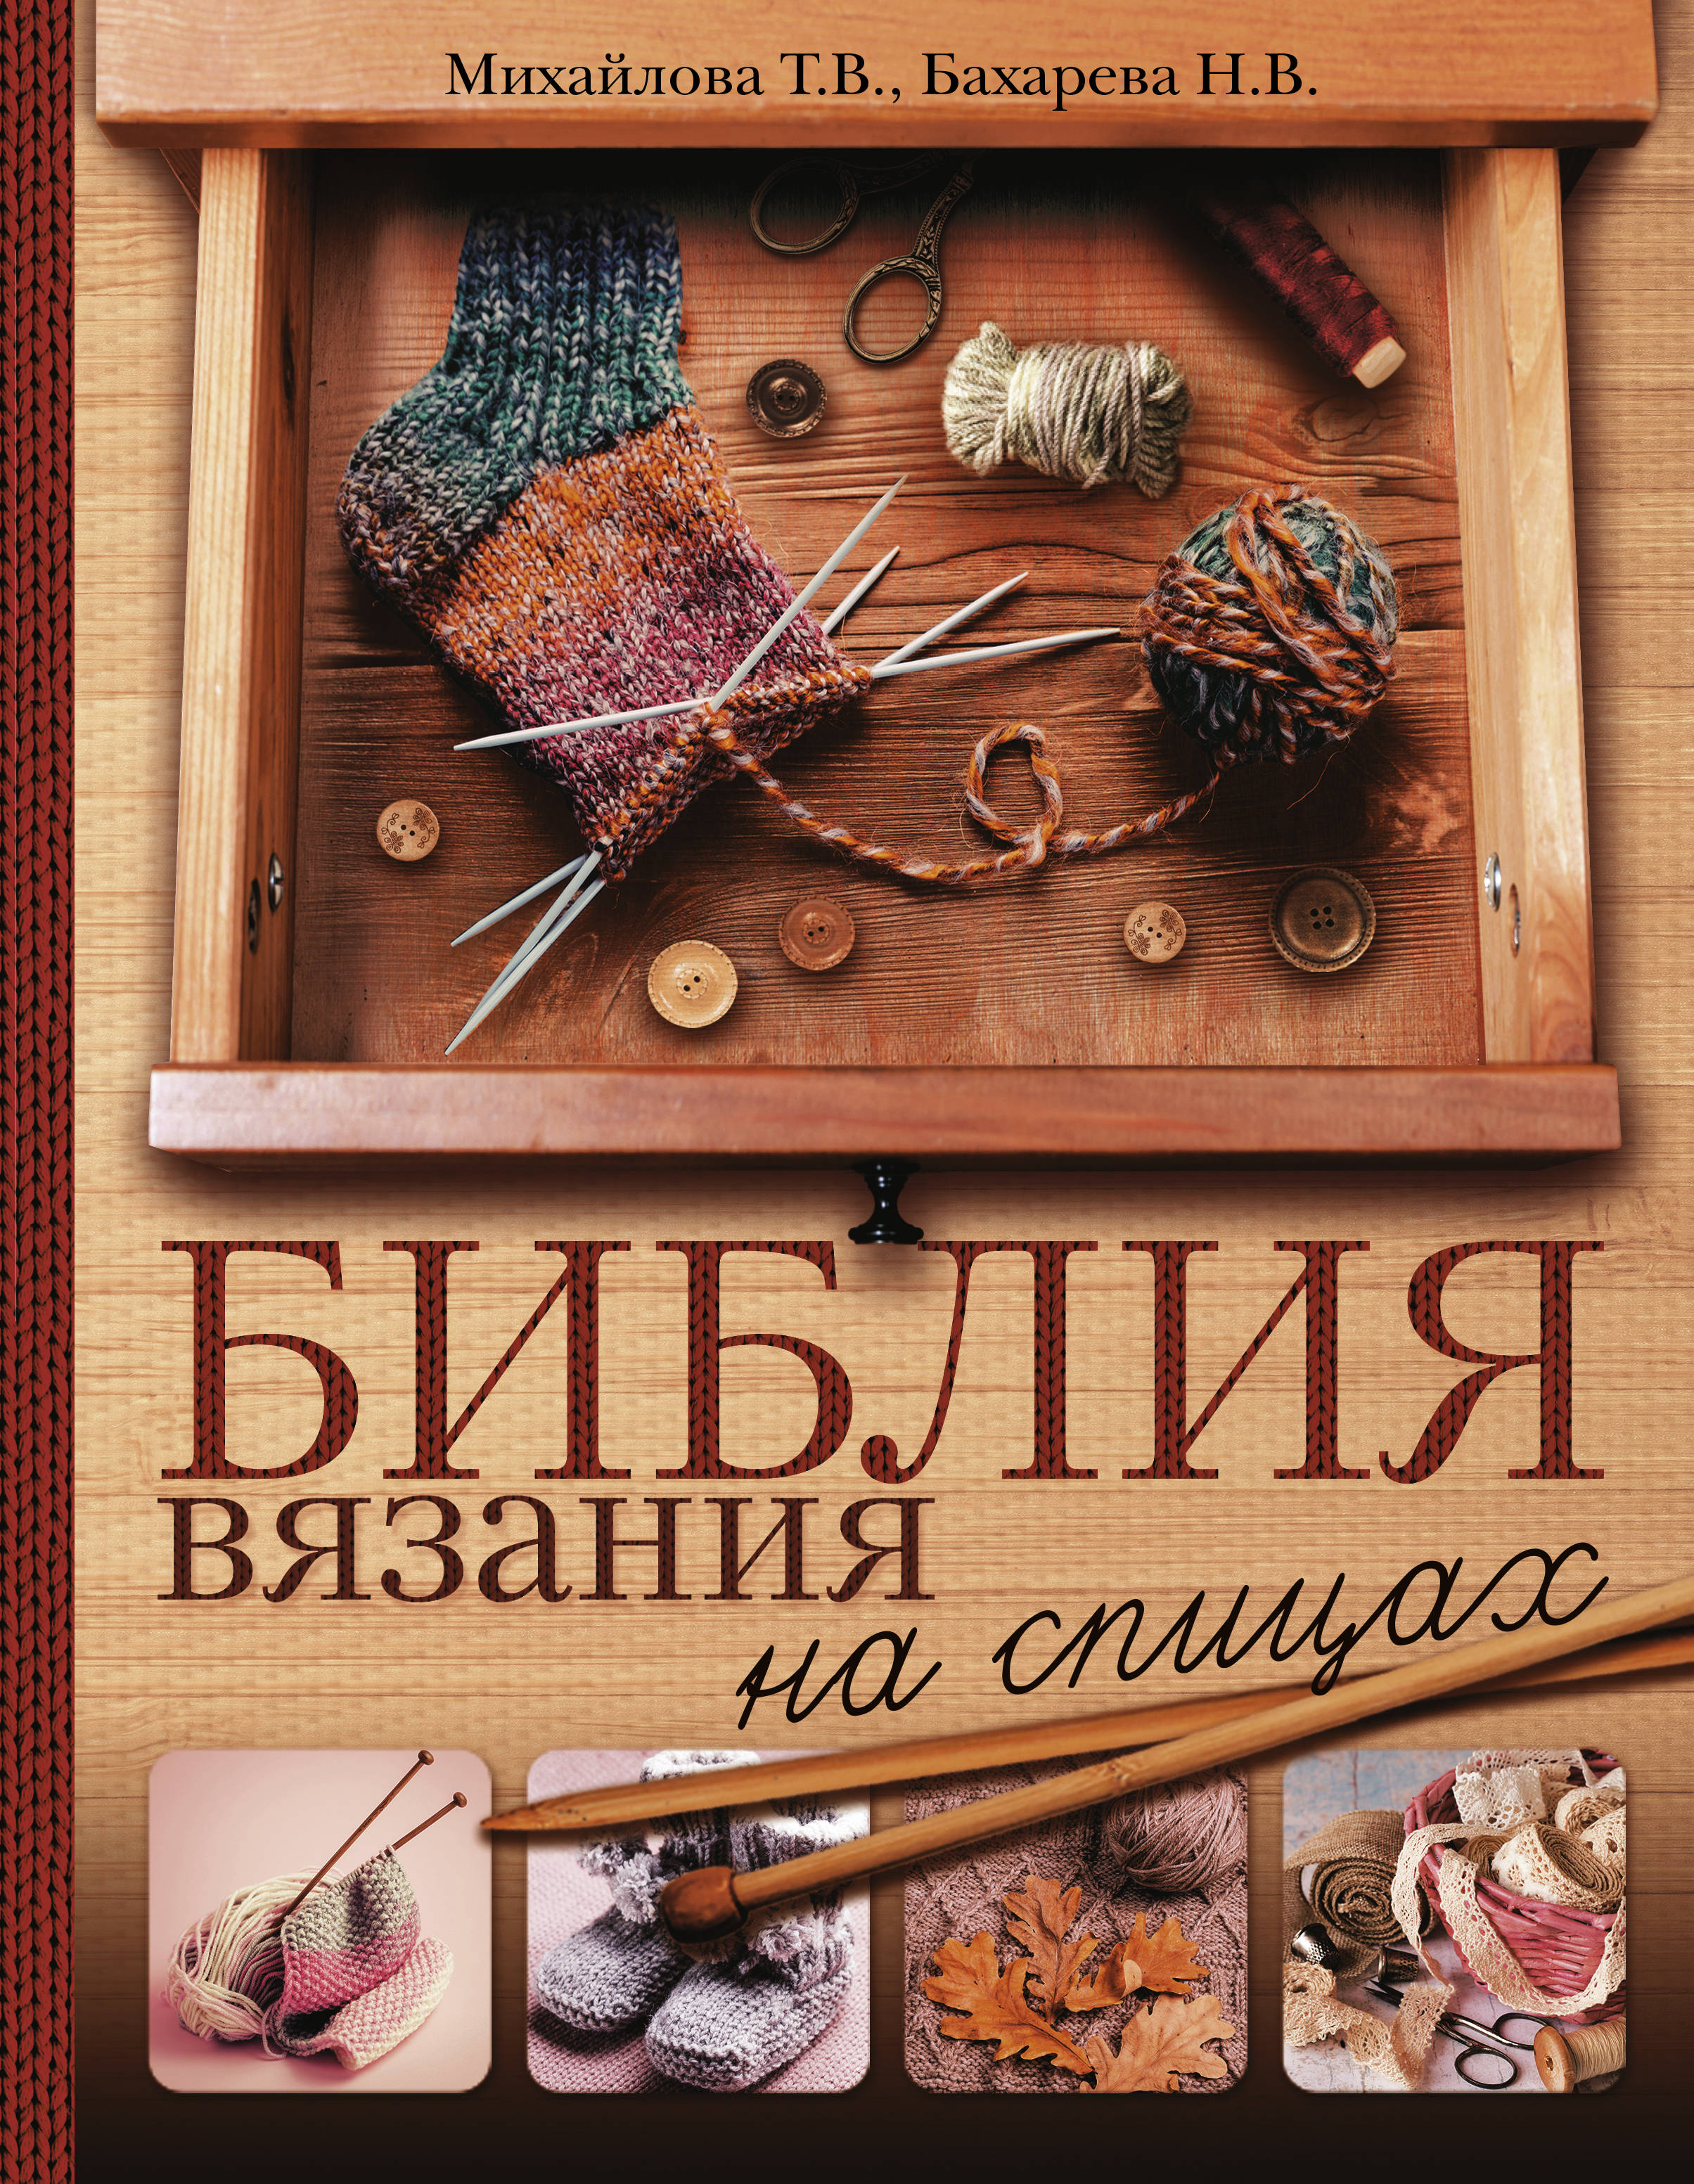 Библия вязания на спицах. Т. В. Михайлова, Н. В. Бахарева